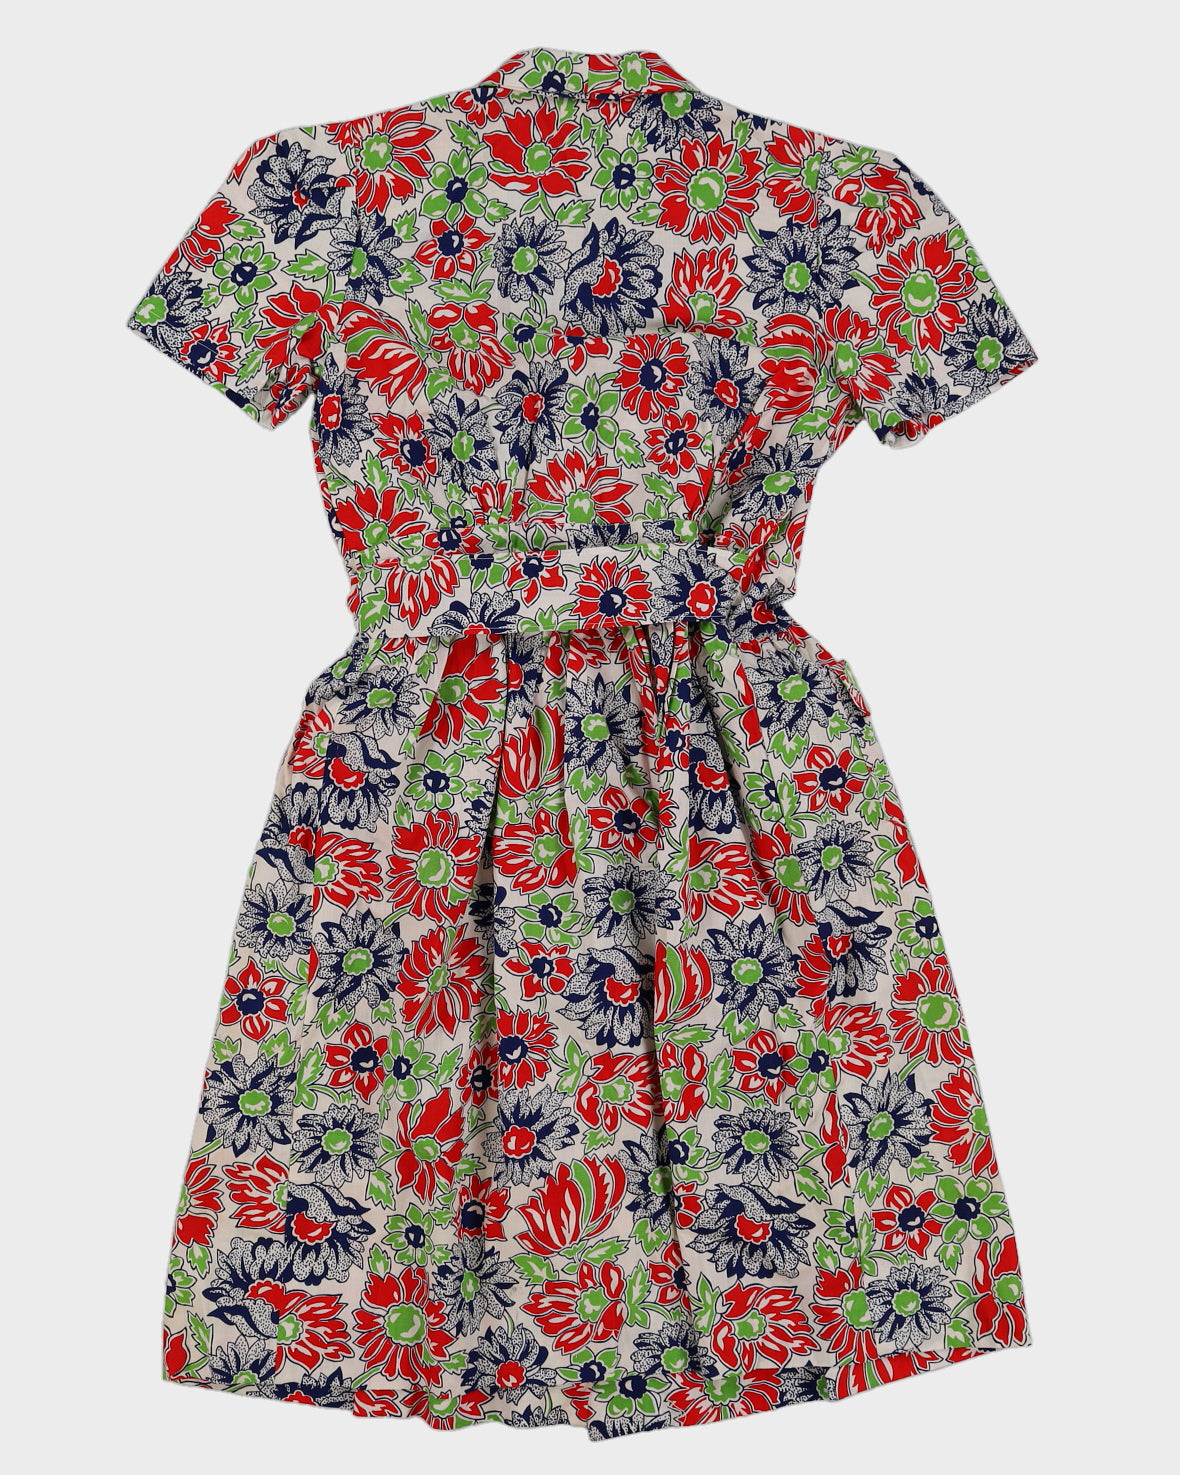 Vintage 1960s Floral Wrap Dress - M